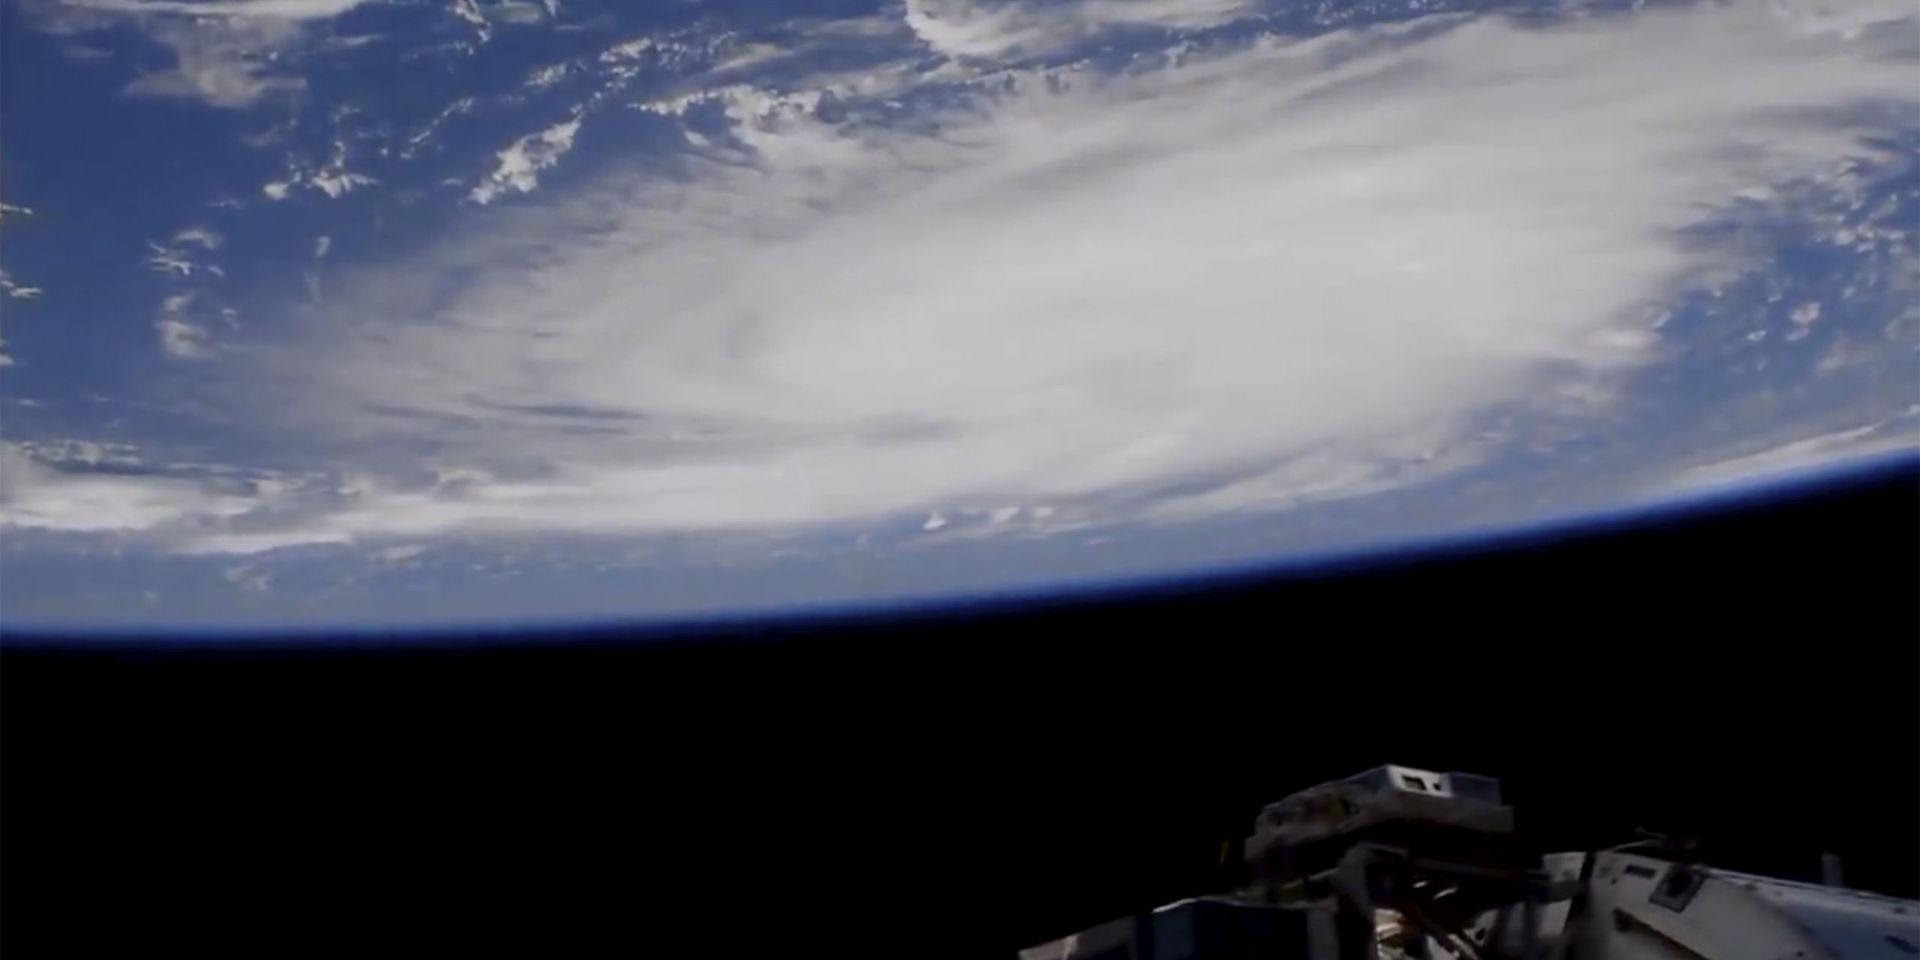 Dorian norr om Puerto Rico, fotograferad från rymdstationen ISS. Orkanen rör sig mot USA:s kust.